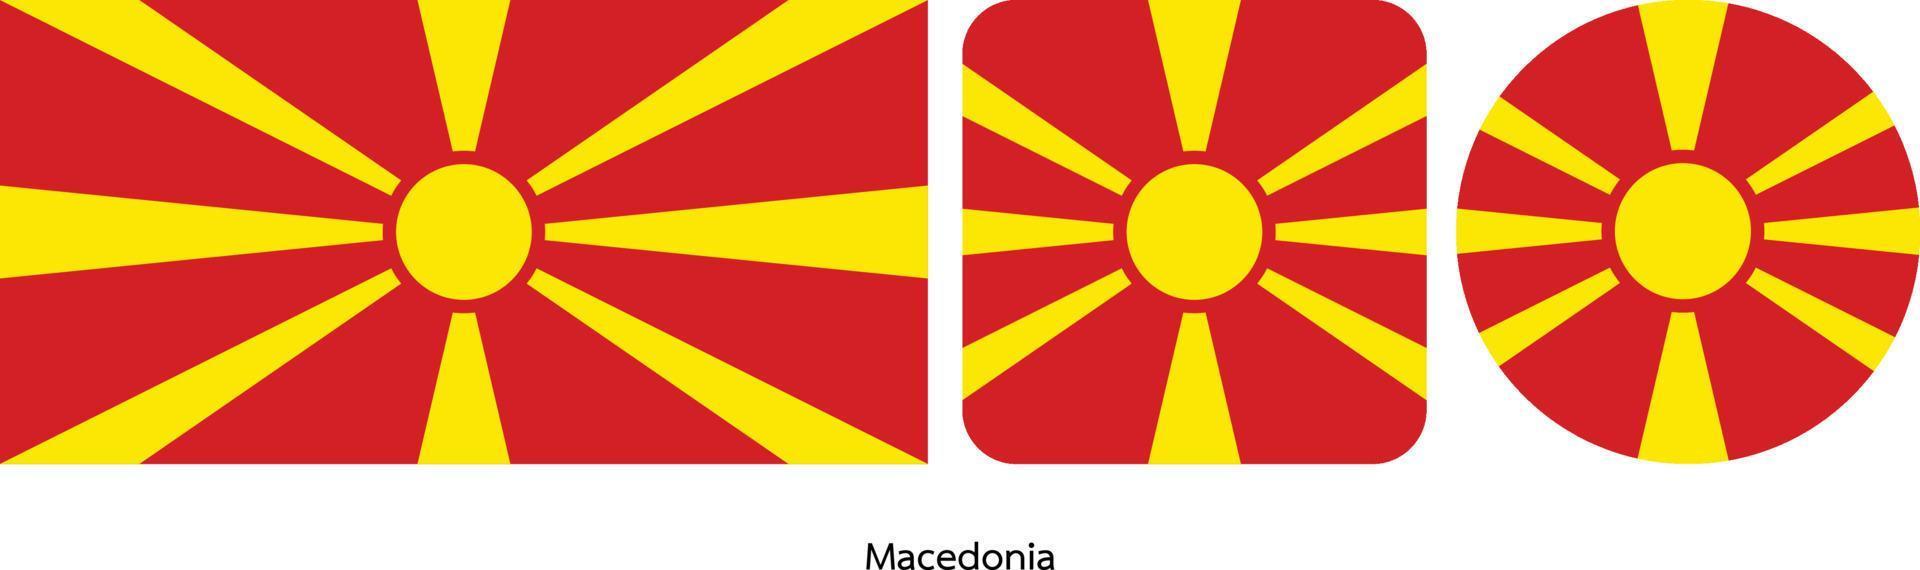 bandiera della macedonia, illustrazione vettoriale